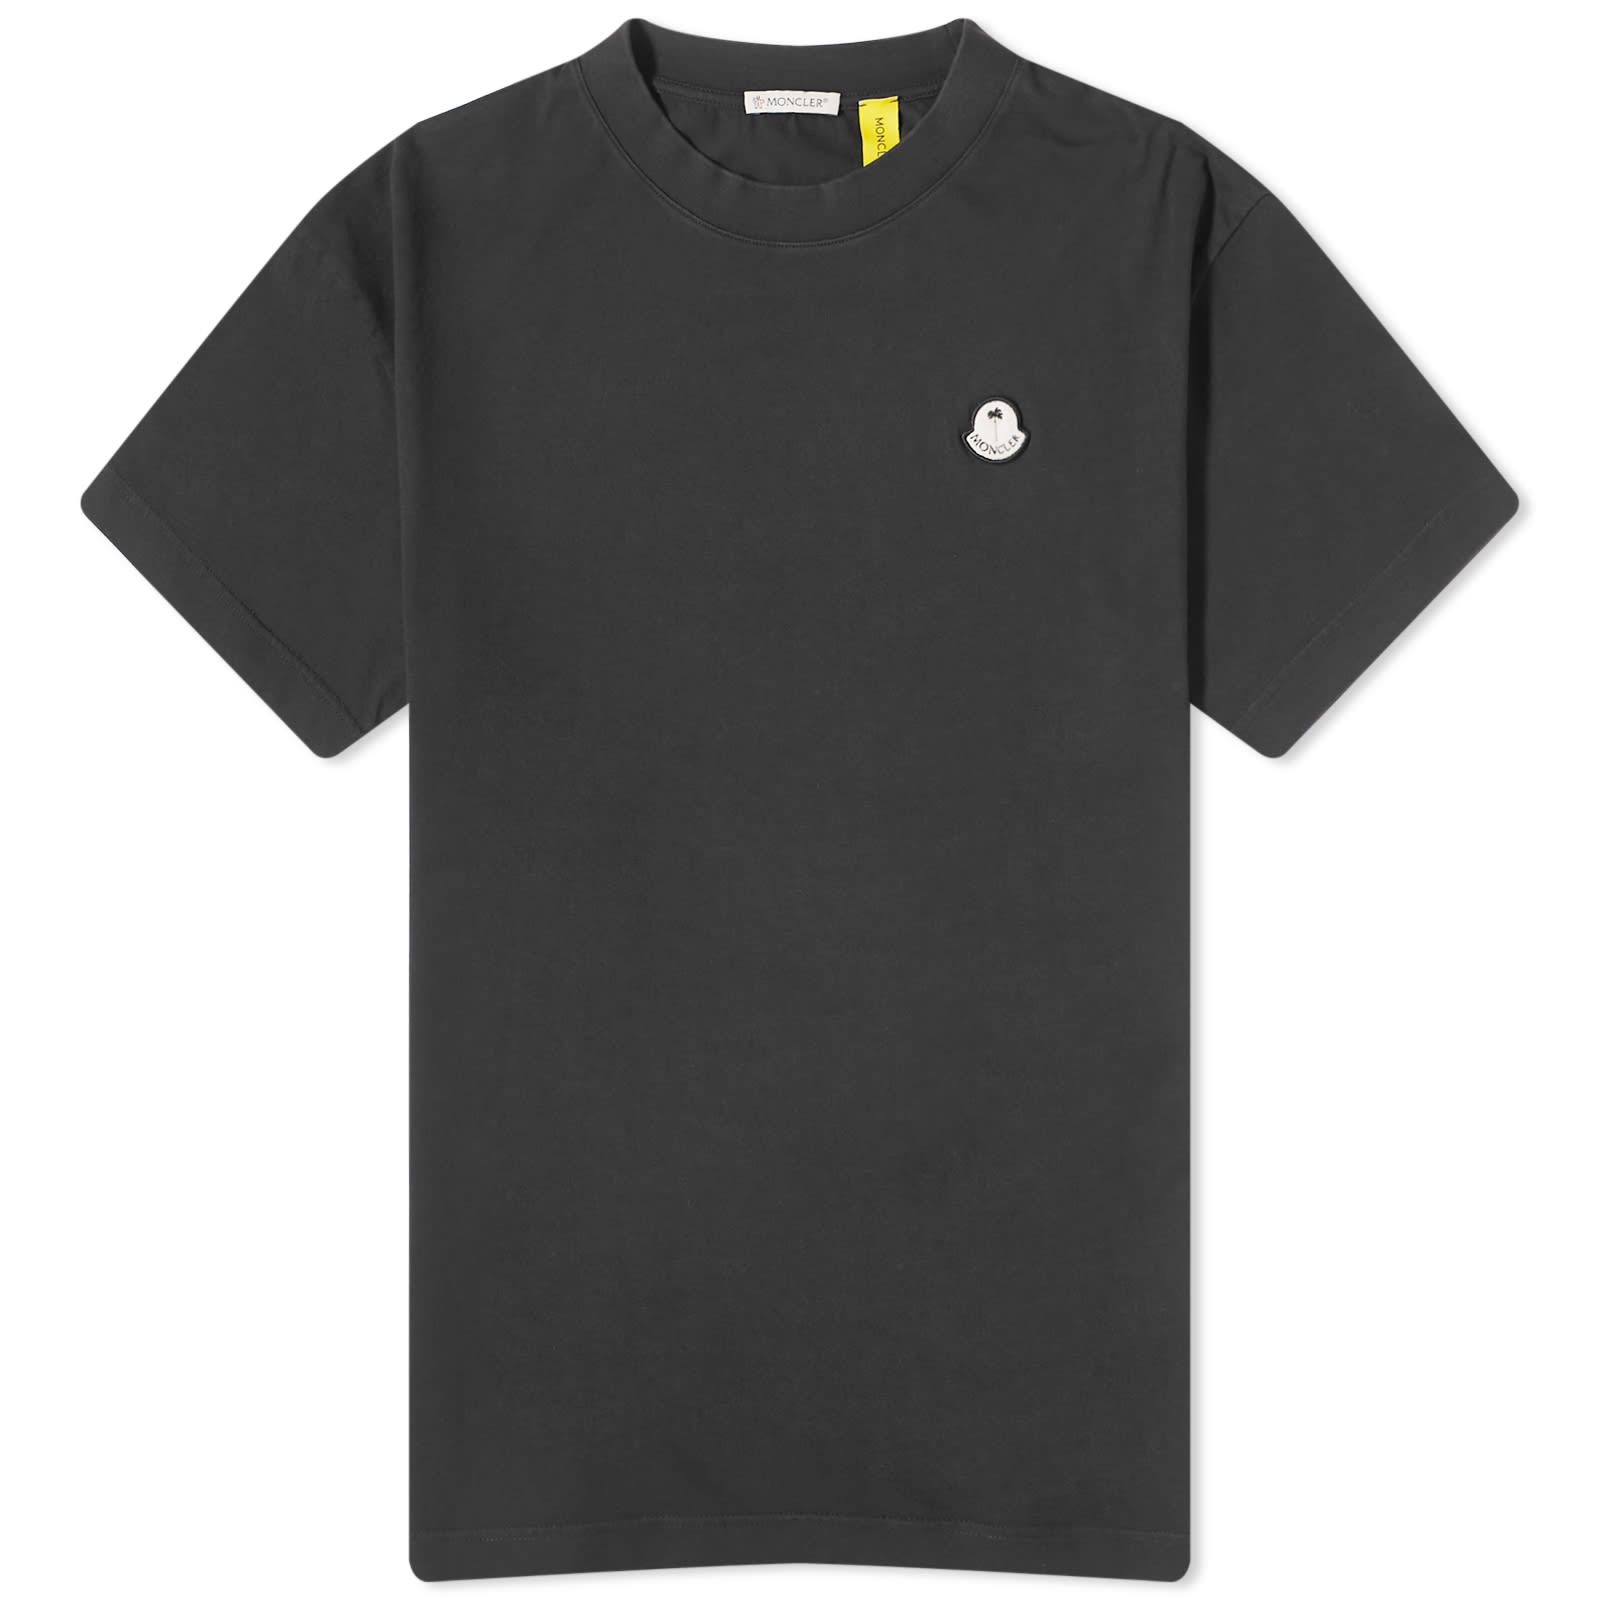 Футболка Moncler Genius X Palm Angels, черный рубашка поло с логотипом moncler x palm angels moncler genius темно синий